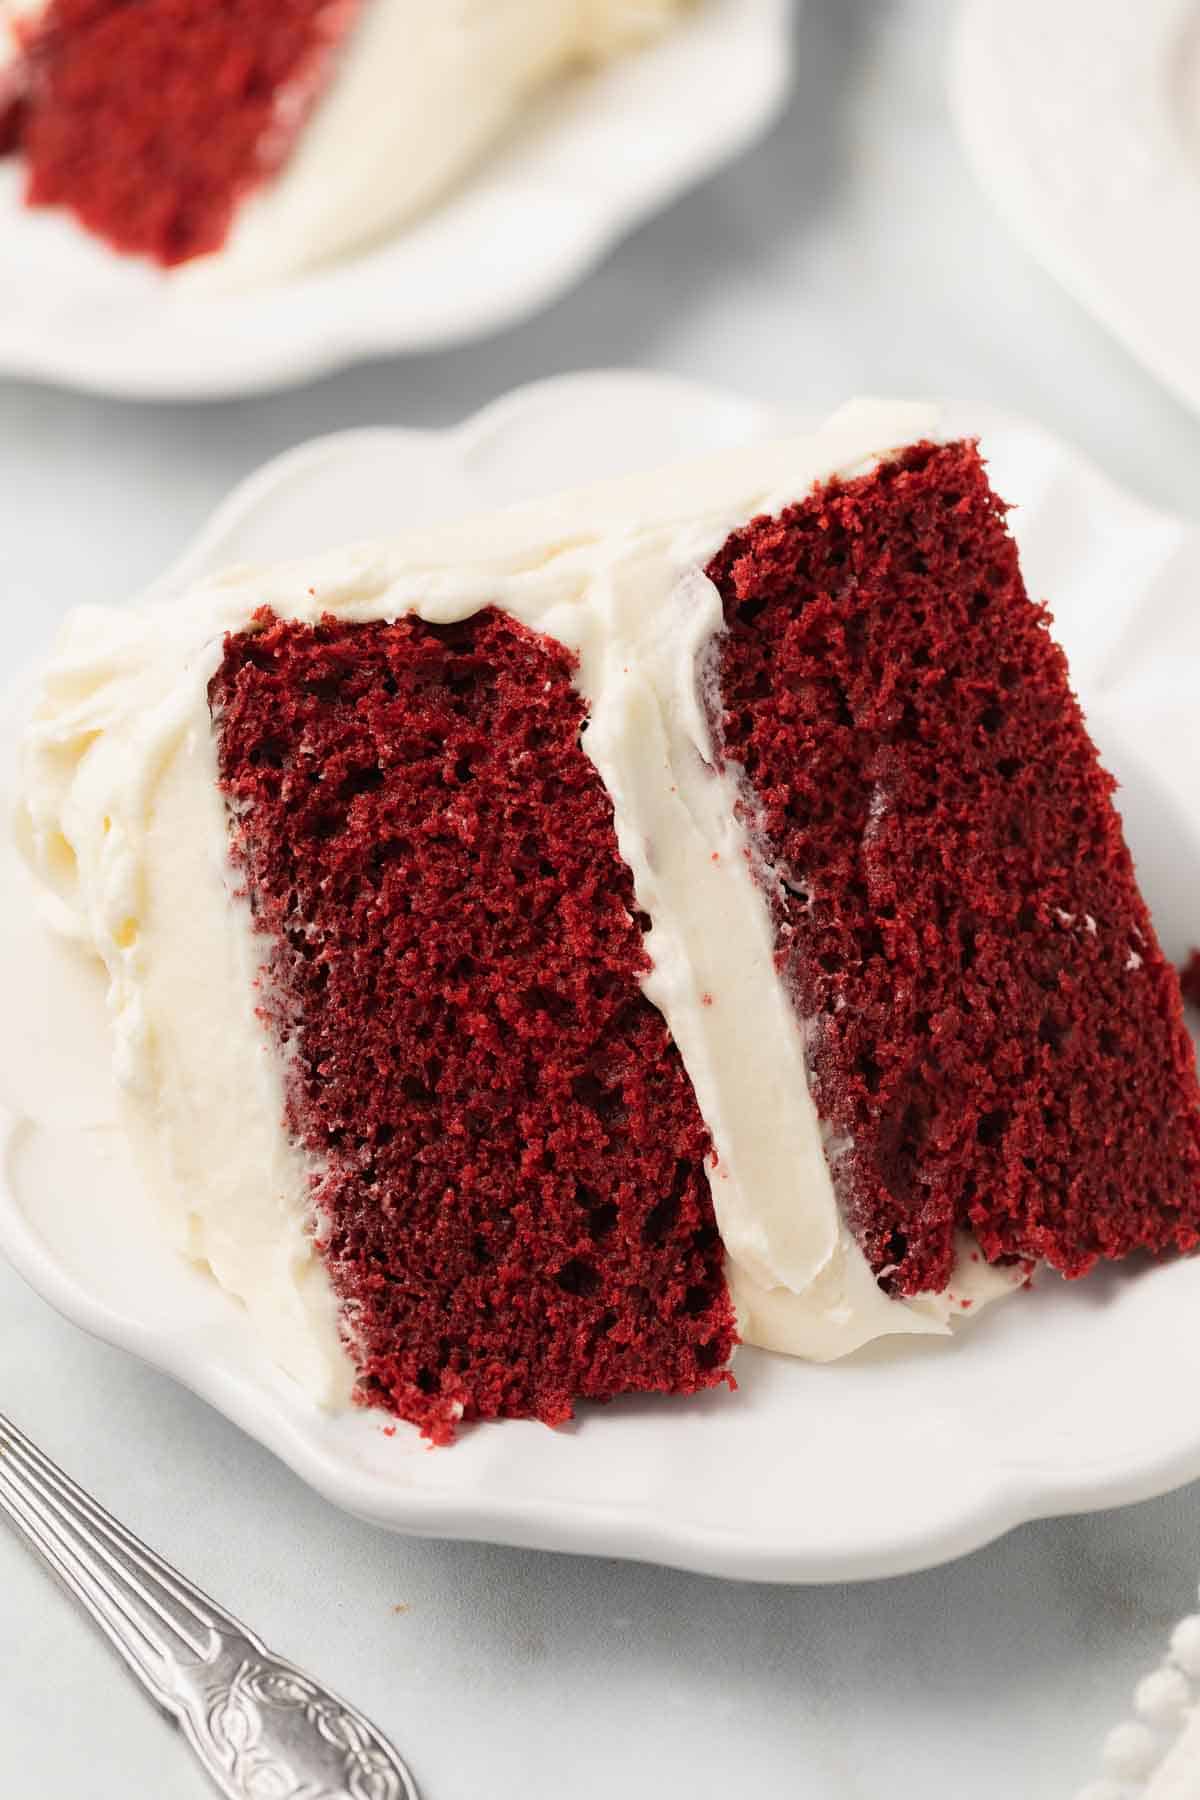 gluten free red velvet cake on white plate with fork before serving